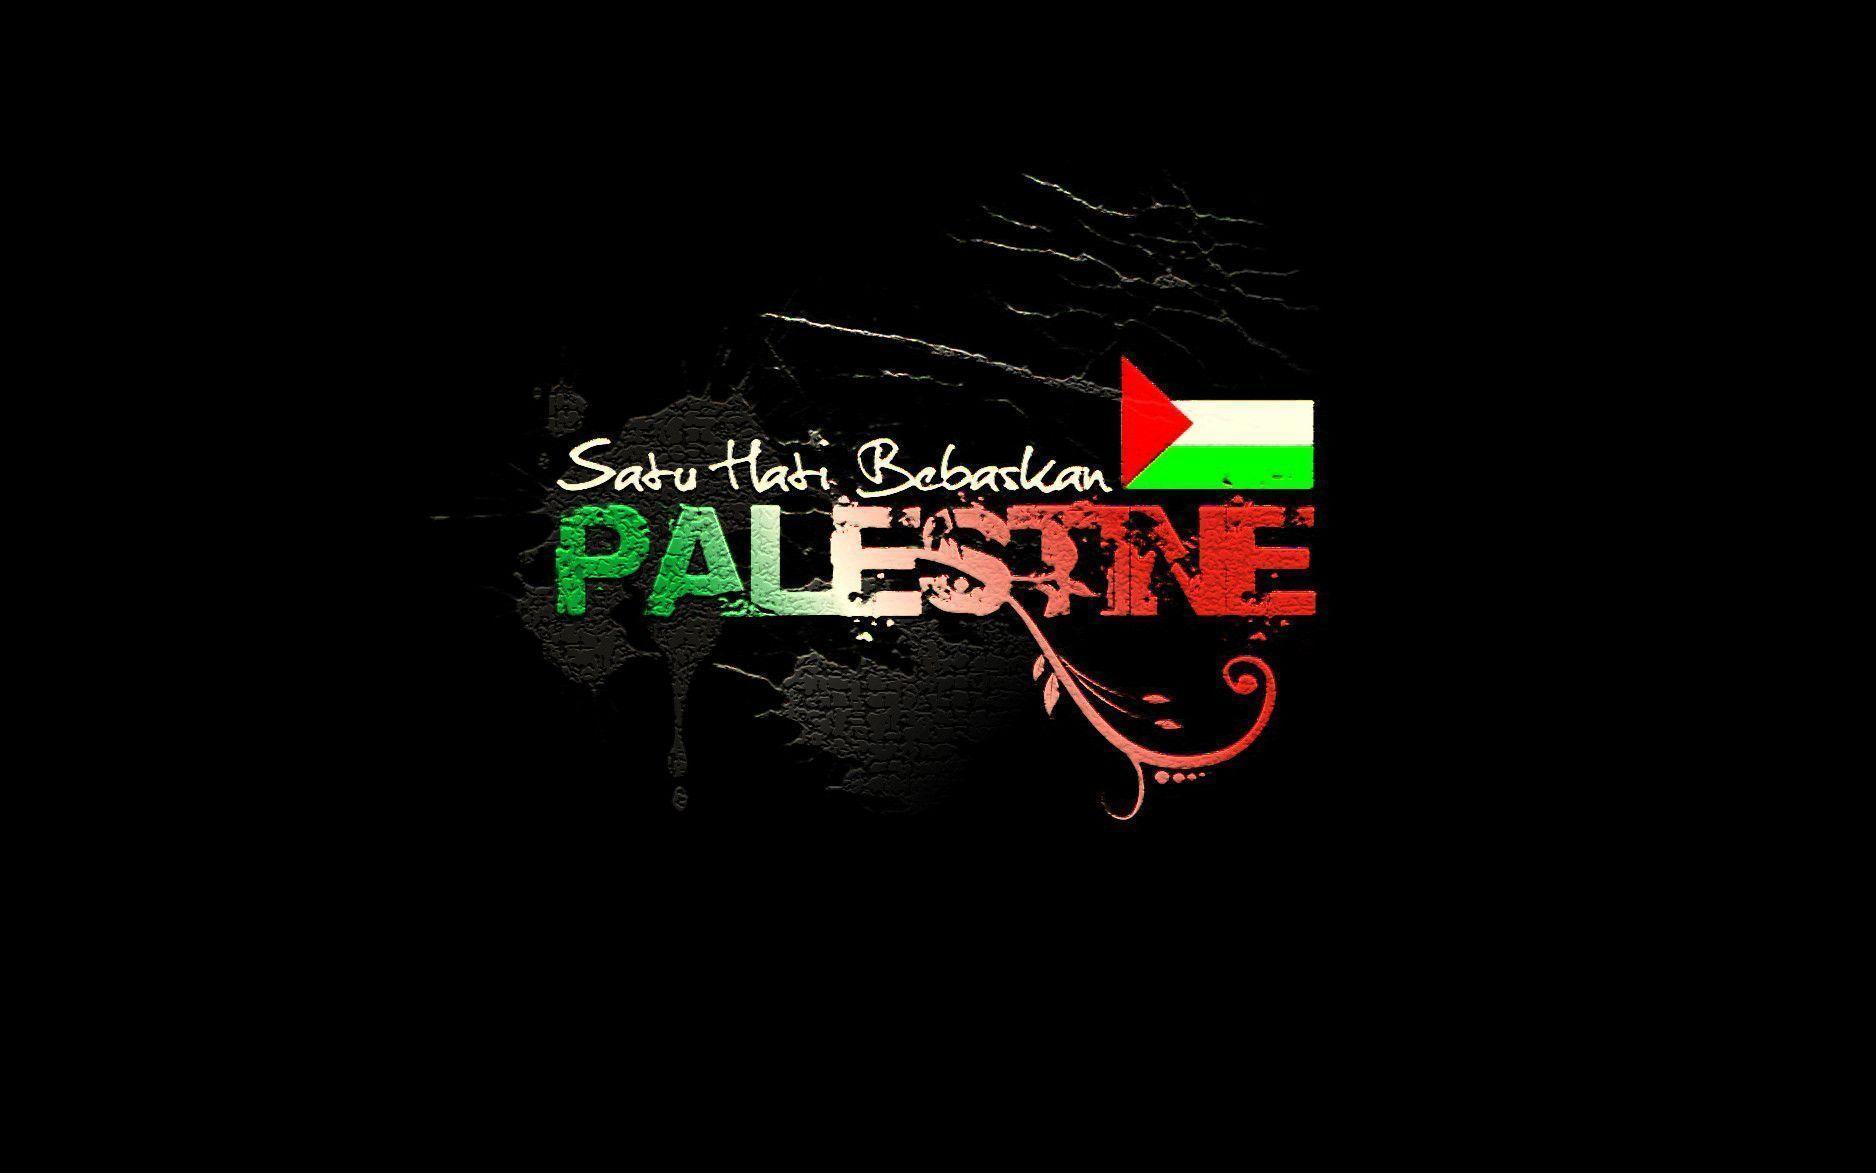 [76+] Free Palestine Wallpaper | WallpaperSafari.com